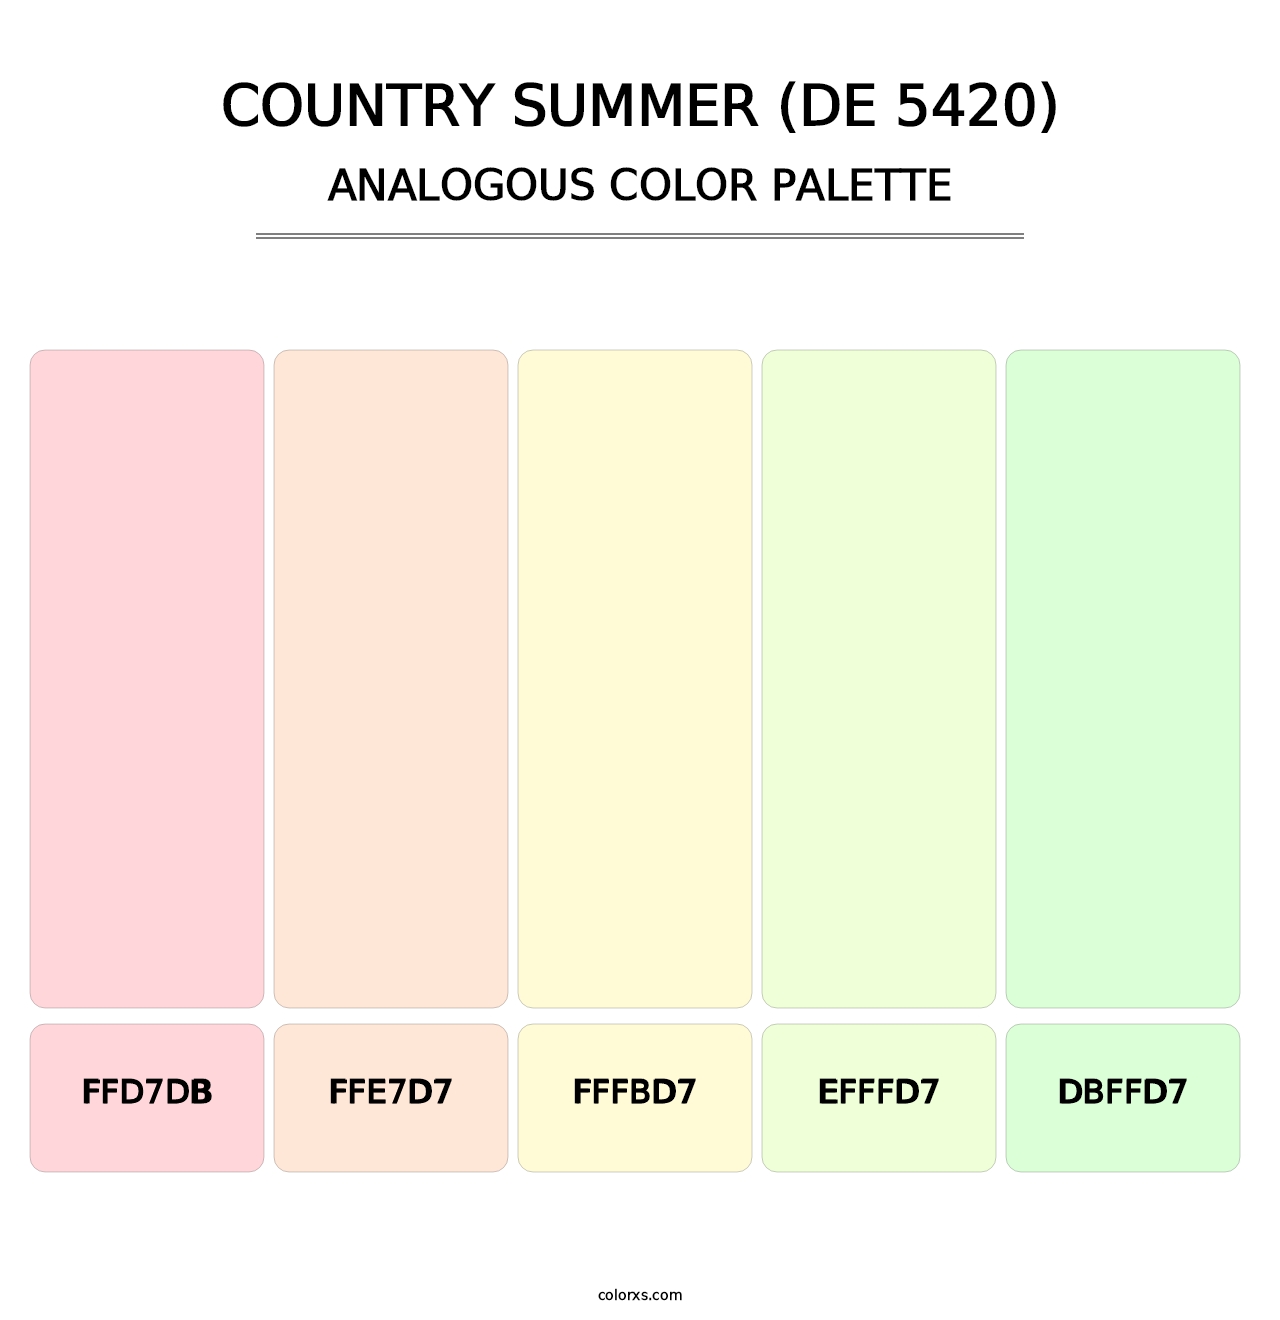 Country Summer (DE 5420) - Analogous Color Palette